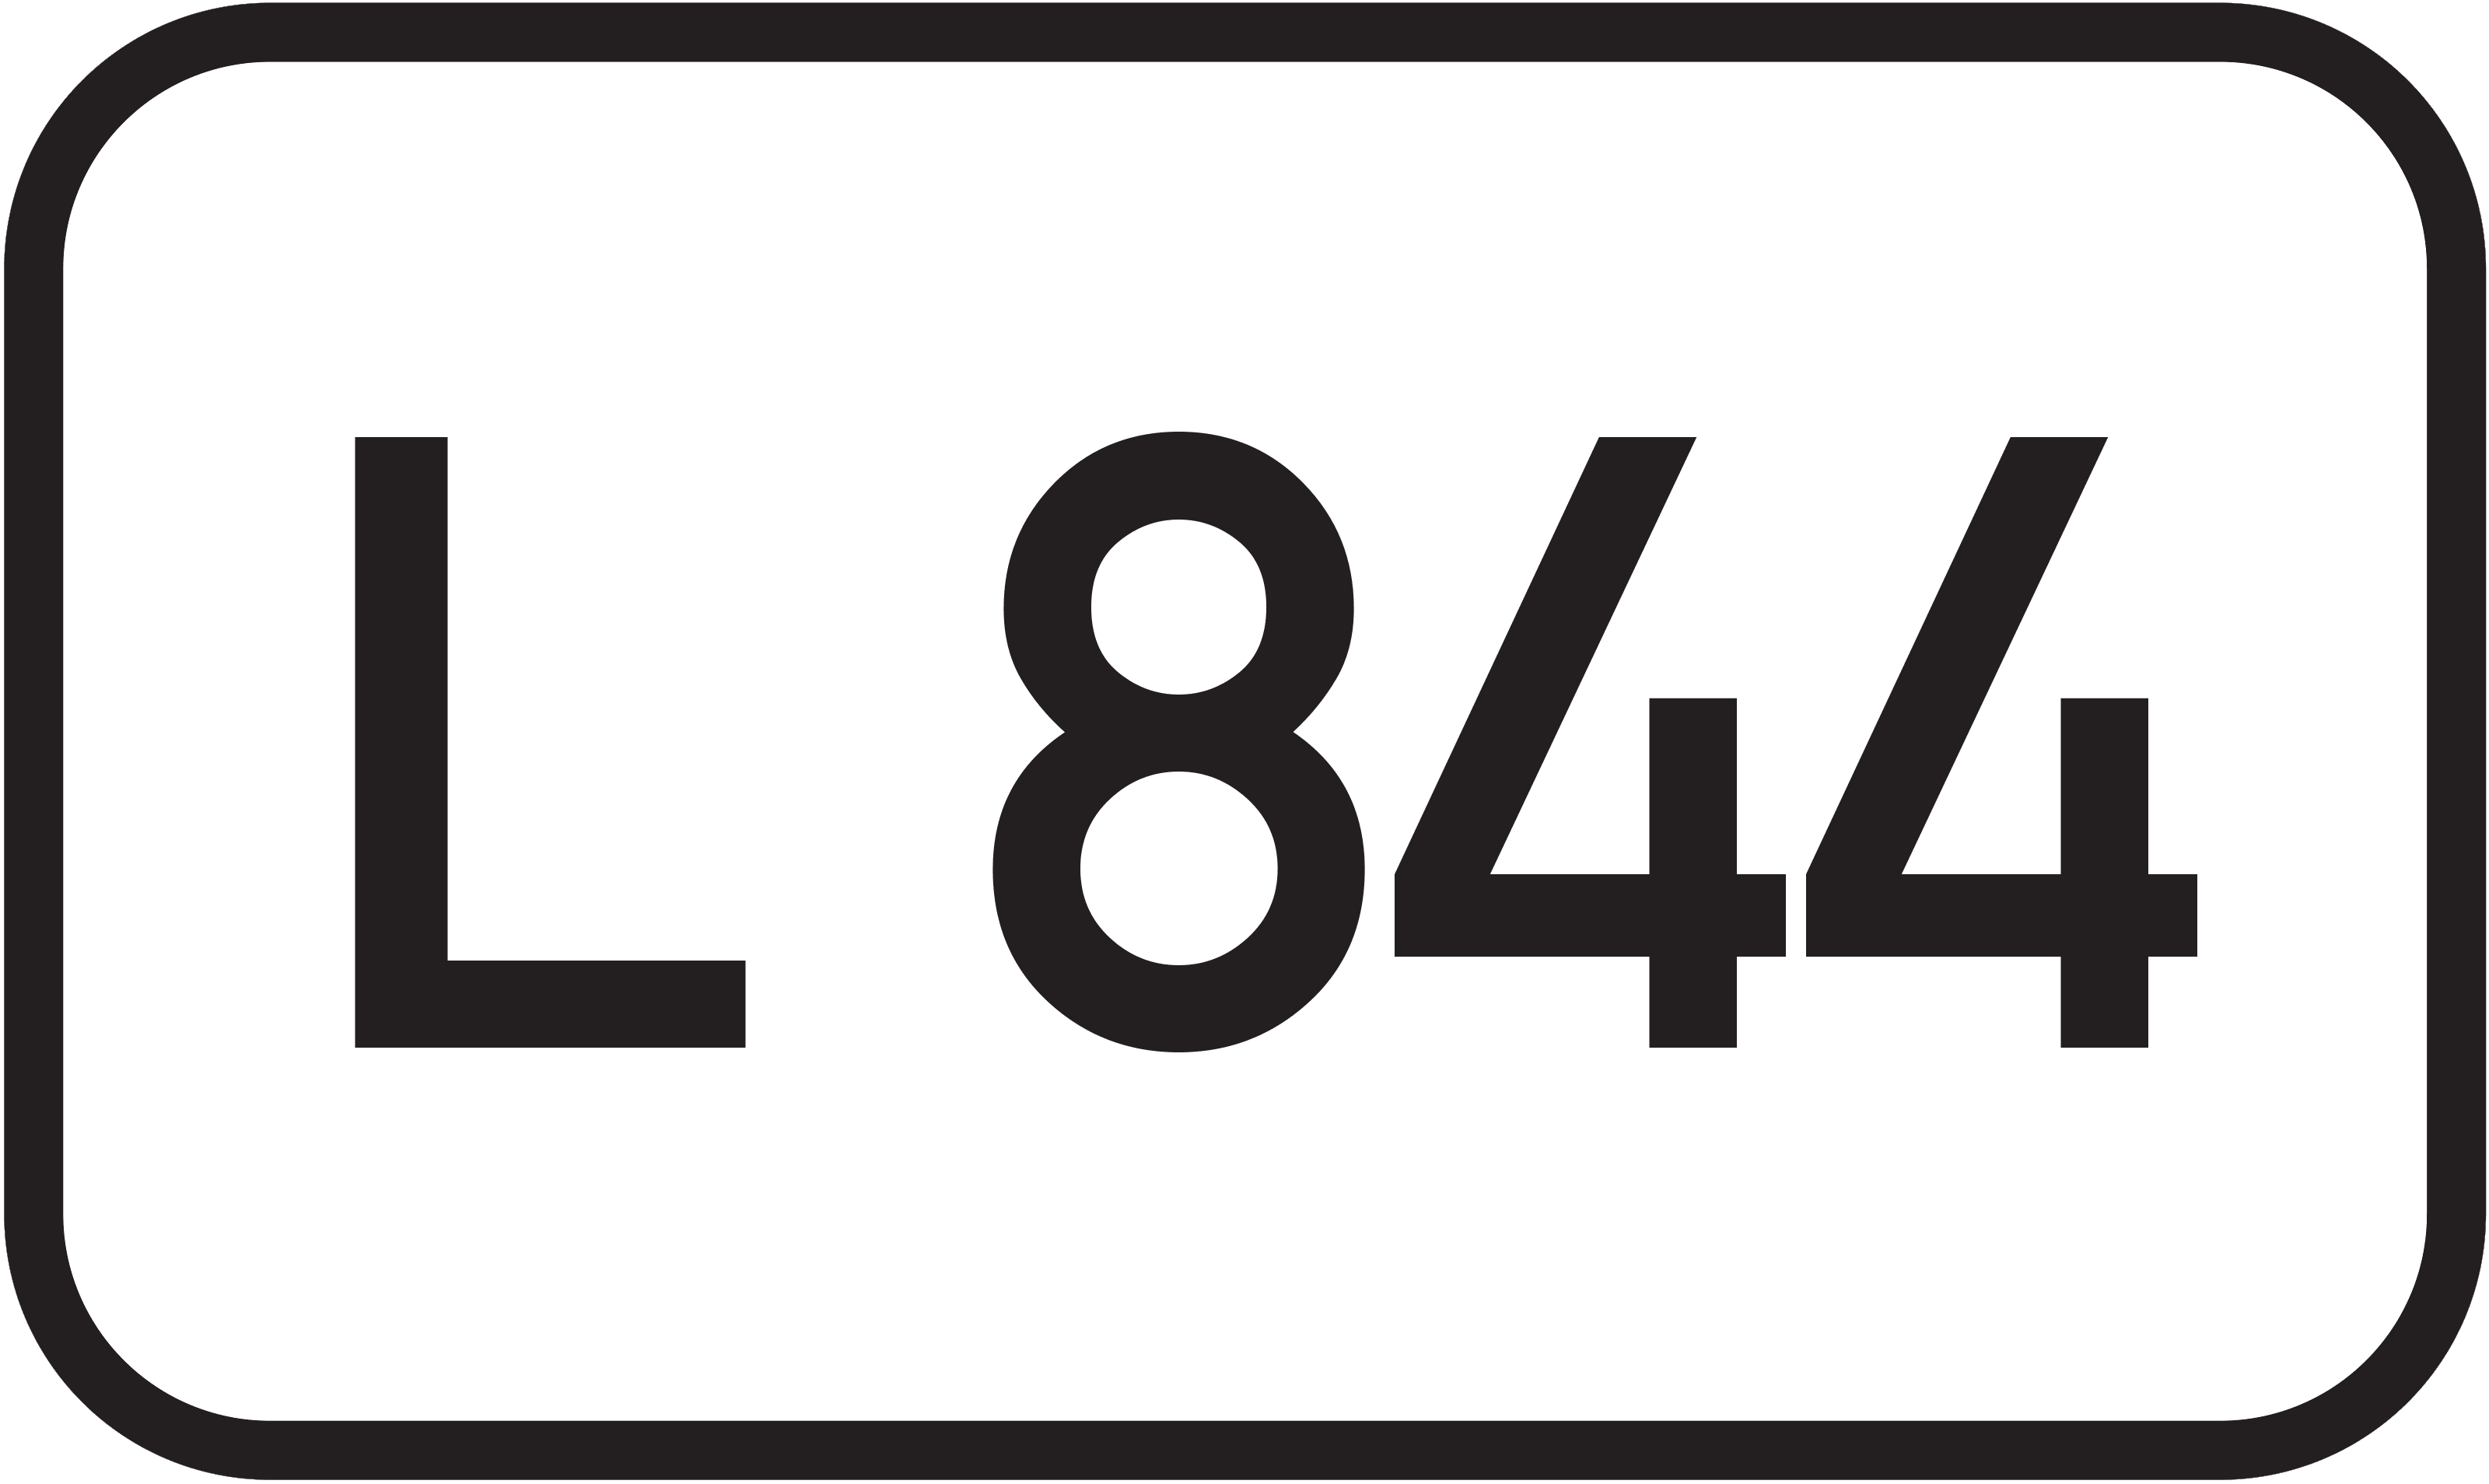 Landesstraße L 844